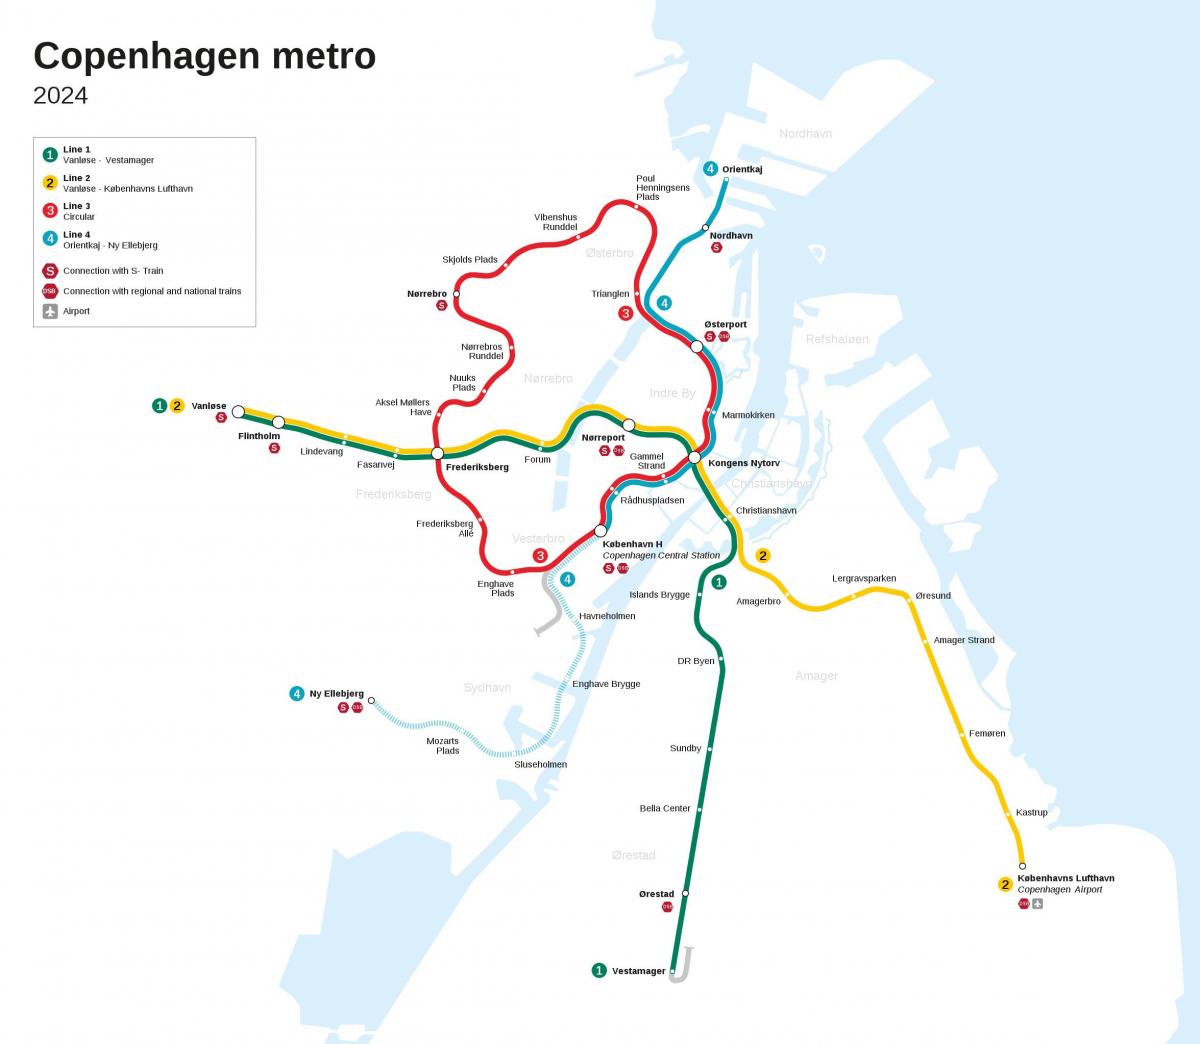 Mappa delle stazioni della metropolitana di Copenaghen